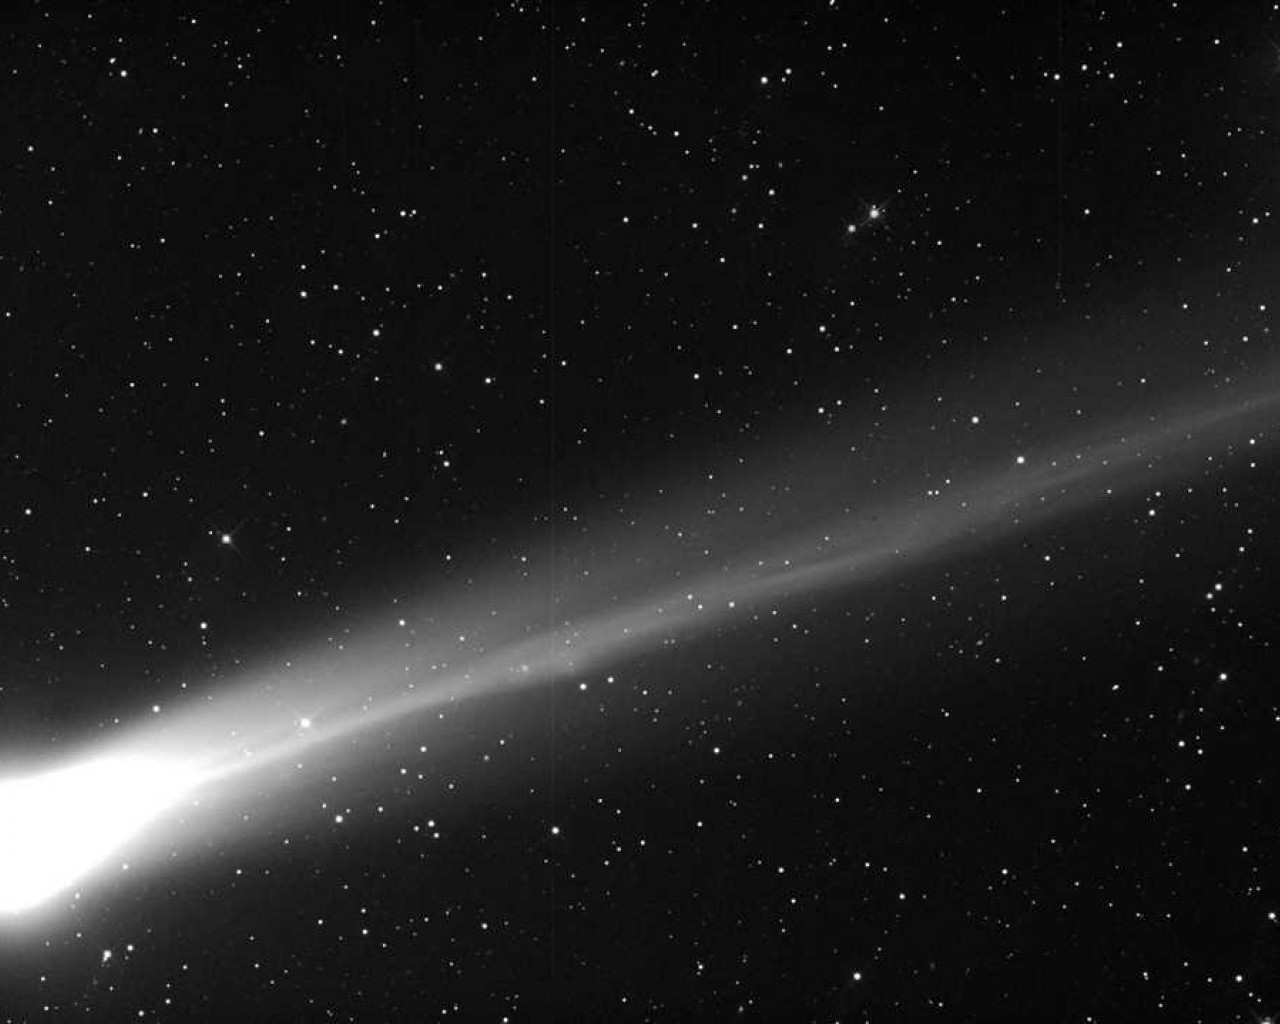 Комета - удивительное явление космоса, привлекающее внимание ученых и любителей астрономии